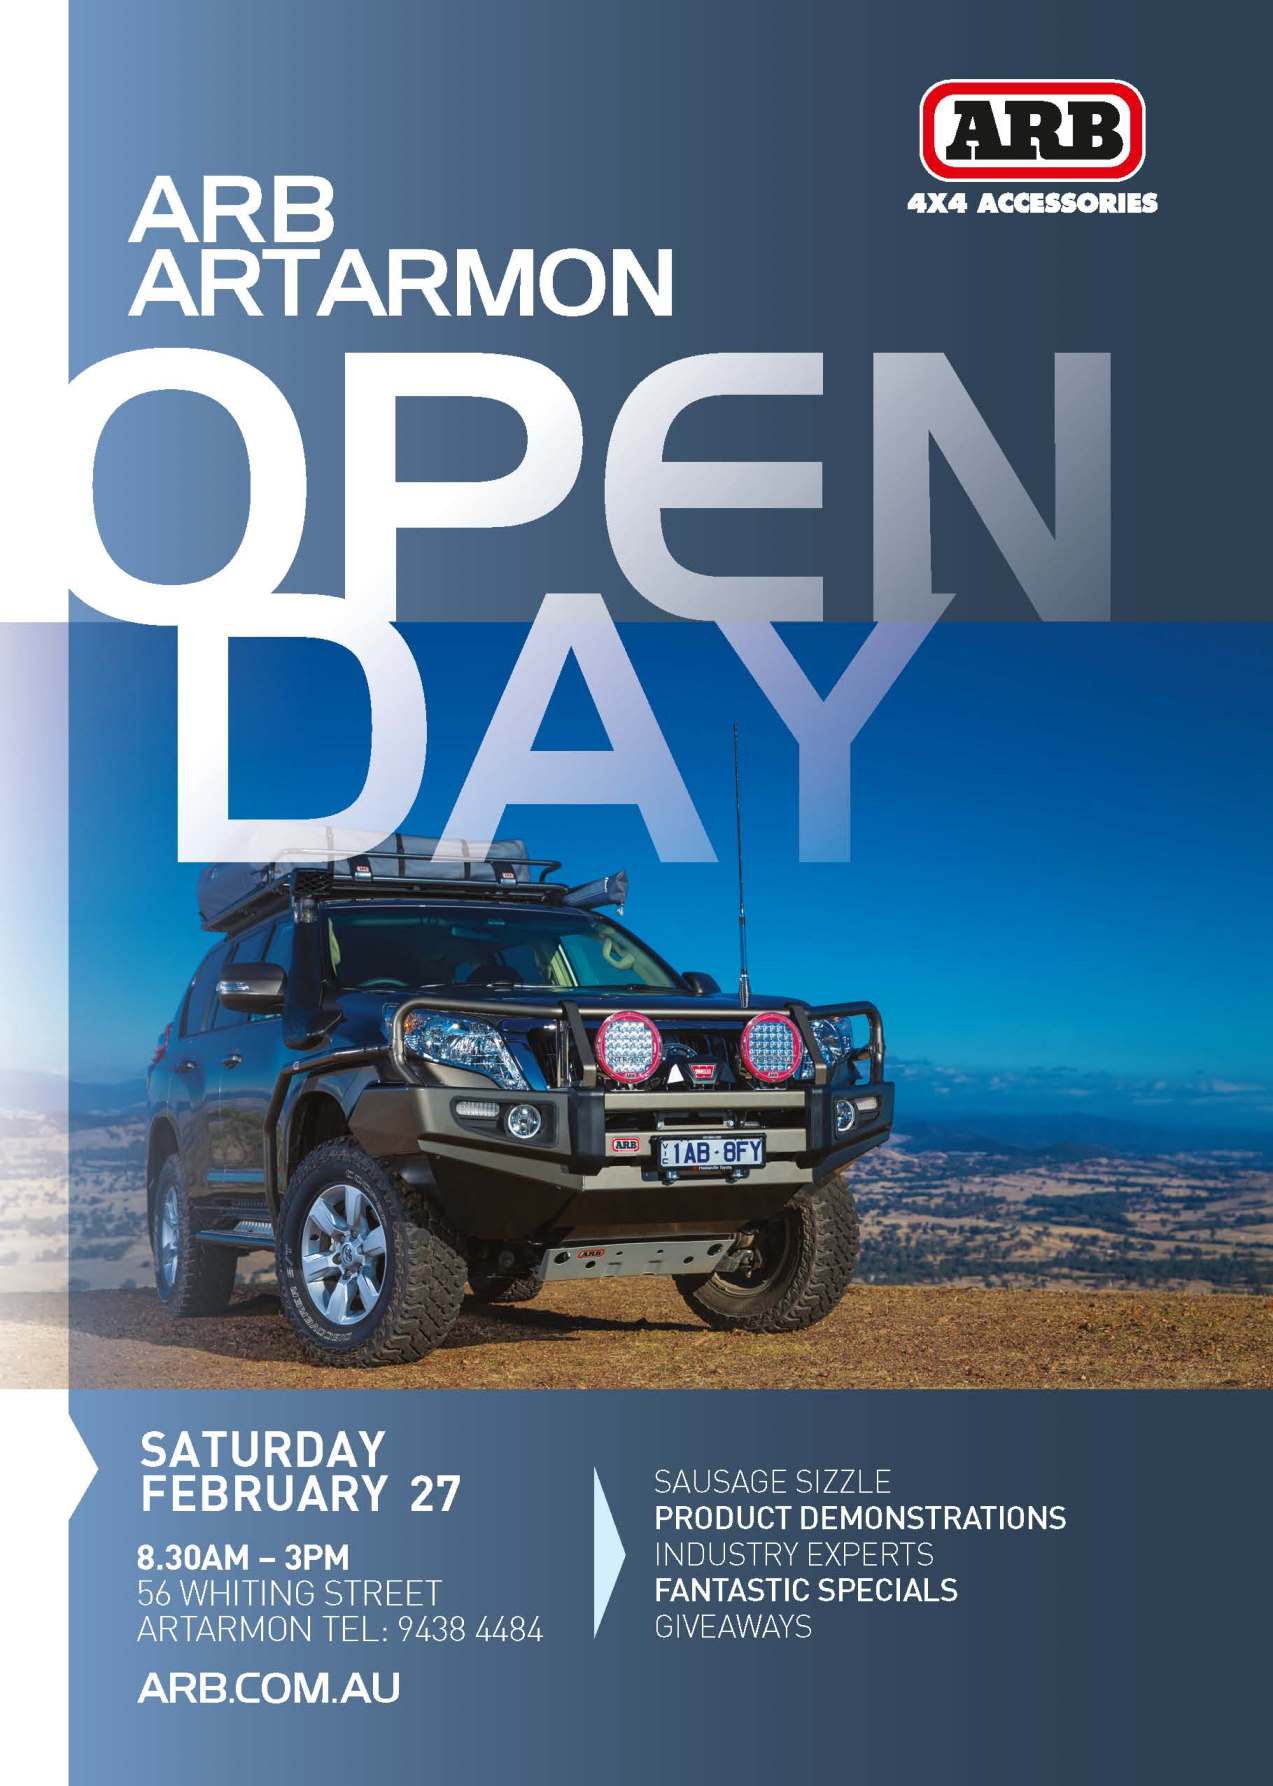 ARB Artarmon Open Day Saturday 27th of February 2016